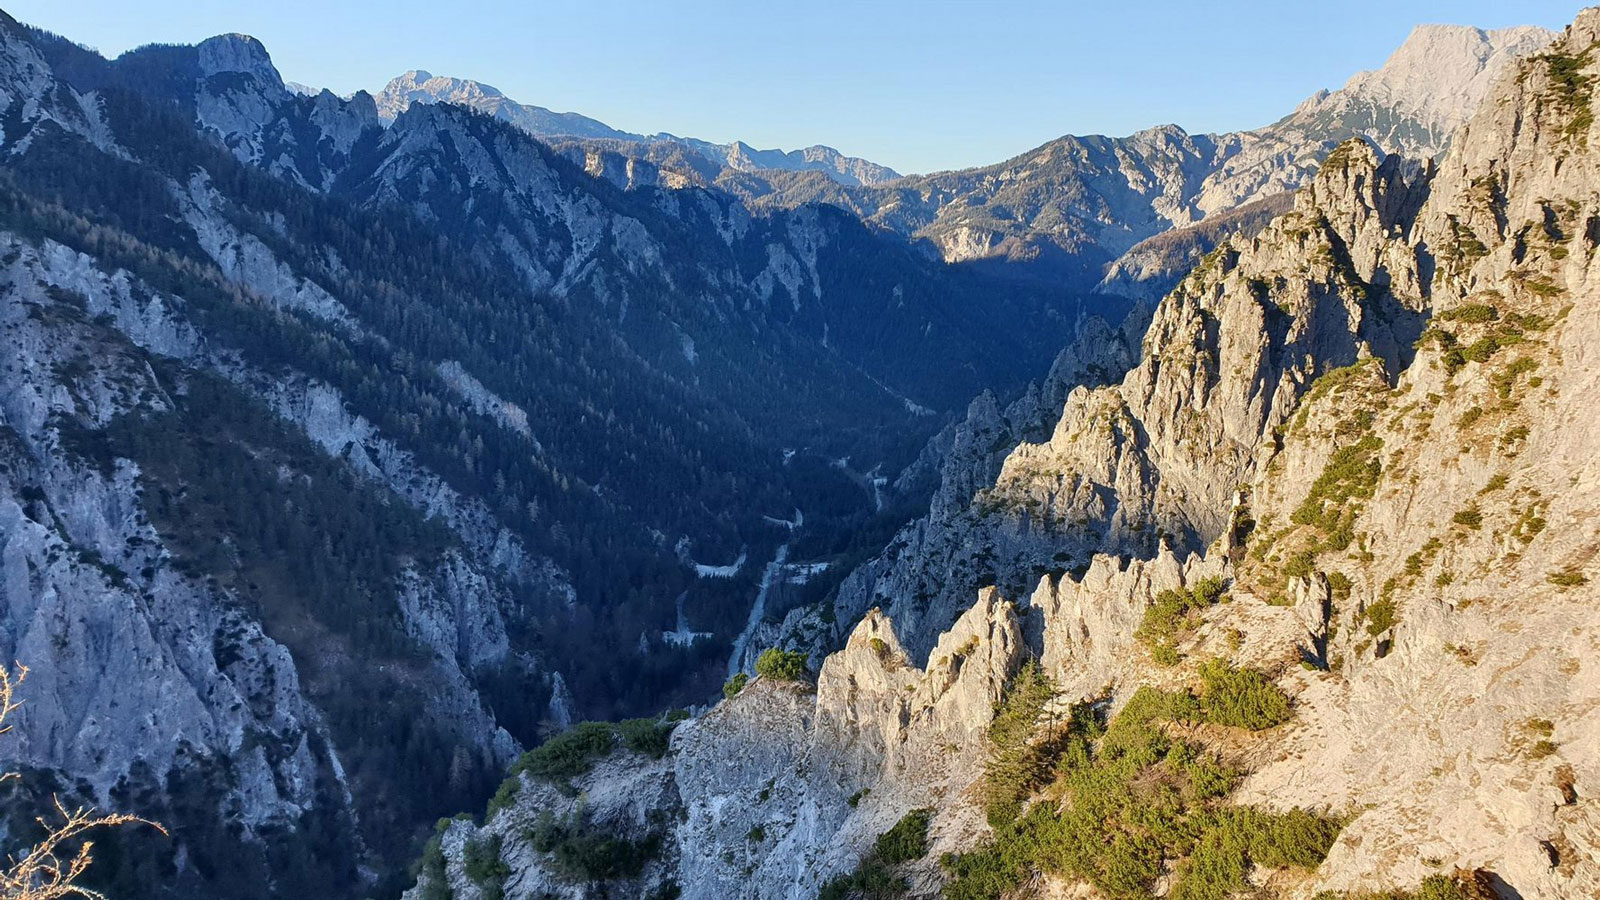 Landschaftlich besonders schön: Geo-Klettersteig Silberreith im Nationalpark Gesäuse